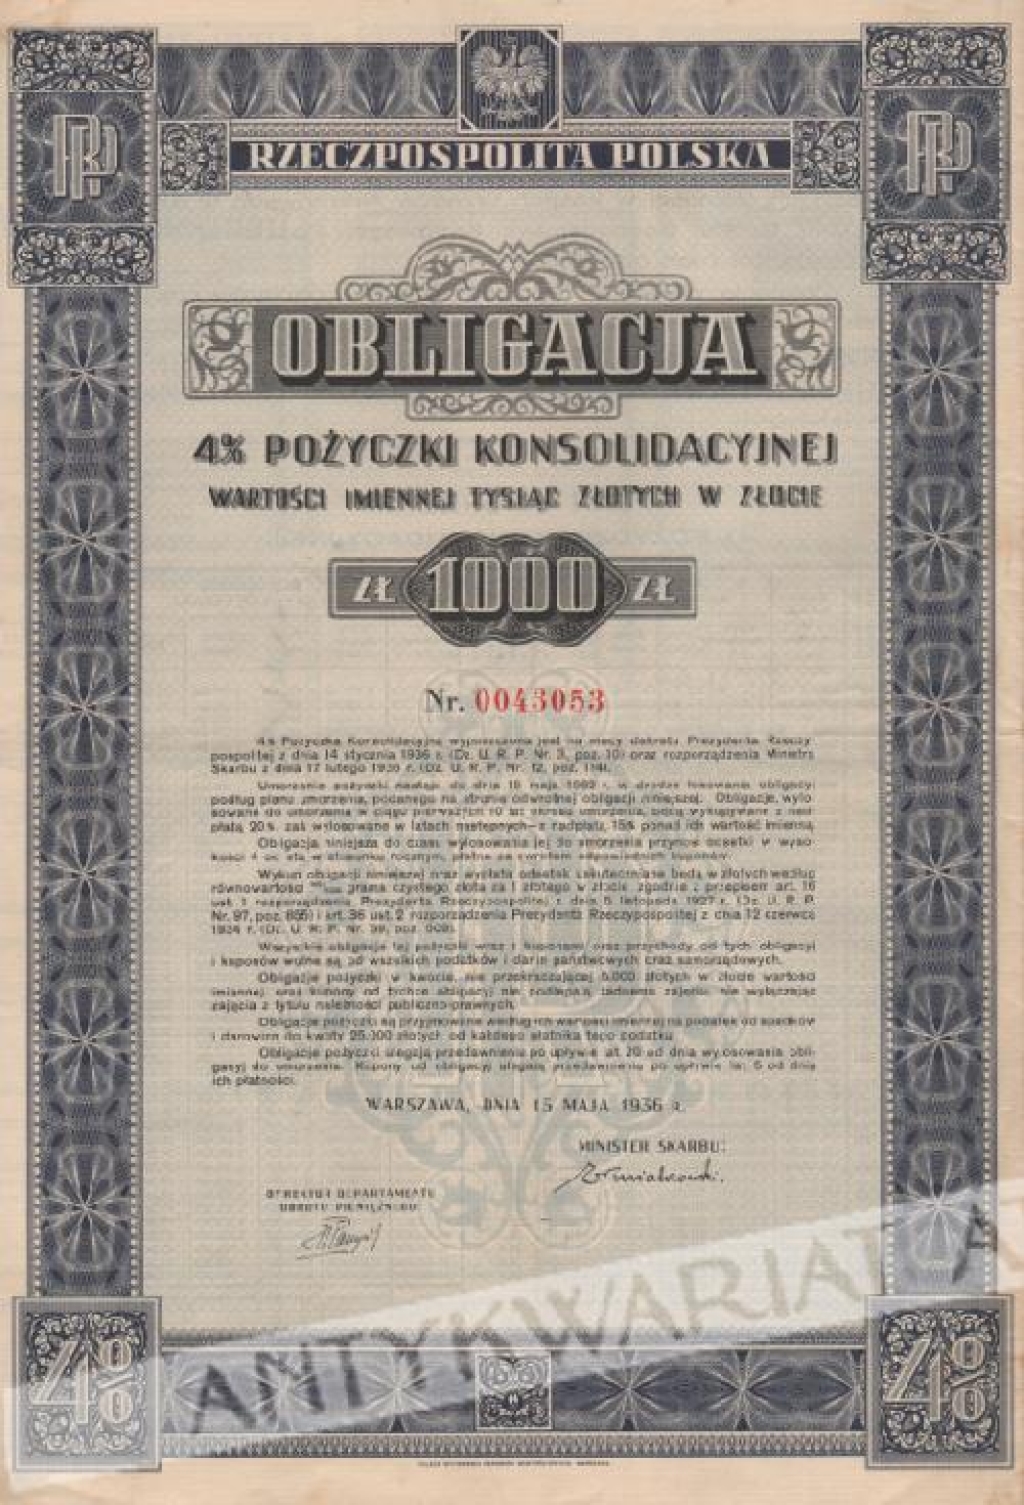 [obligacja] Obligacja 4% pożyczki konsolidacyjnej wartości imiennej tysiąc złotych w złocie (1000 zł.)